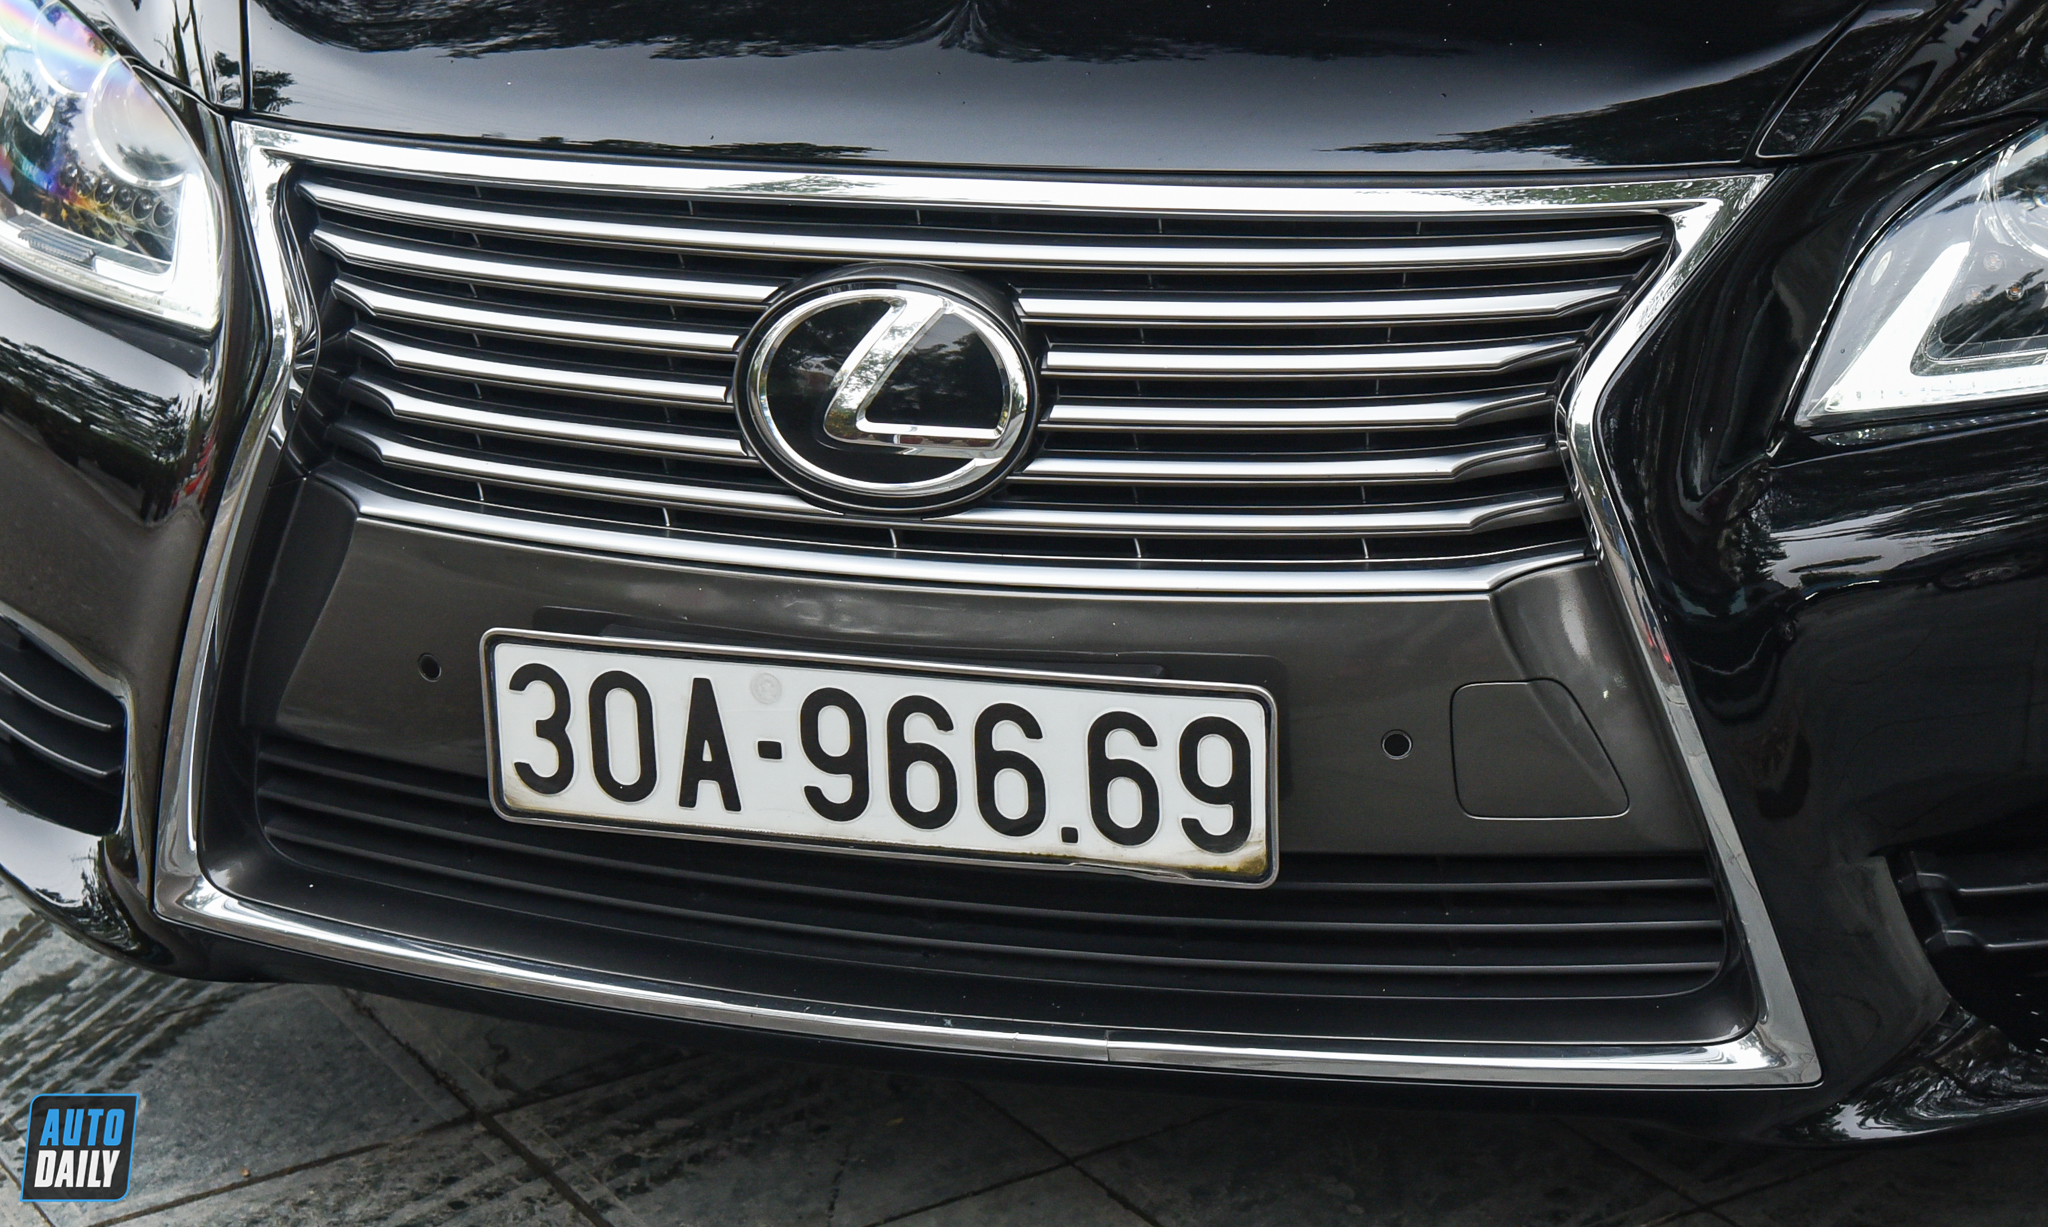 Lexus LS460L 2013 biển đẹp chào bán lại hơn 3 tỷ đồng adt-7721.jpg